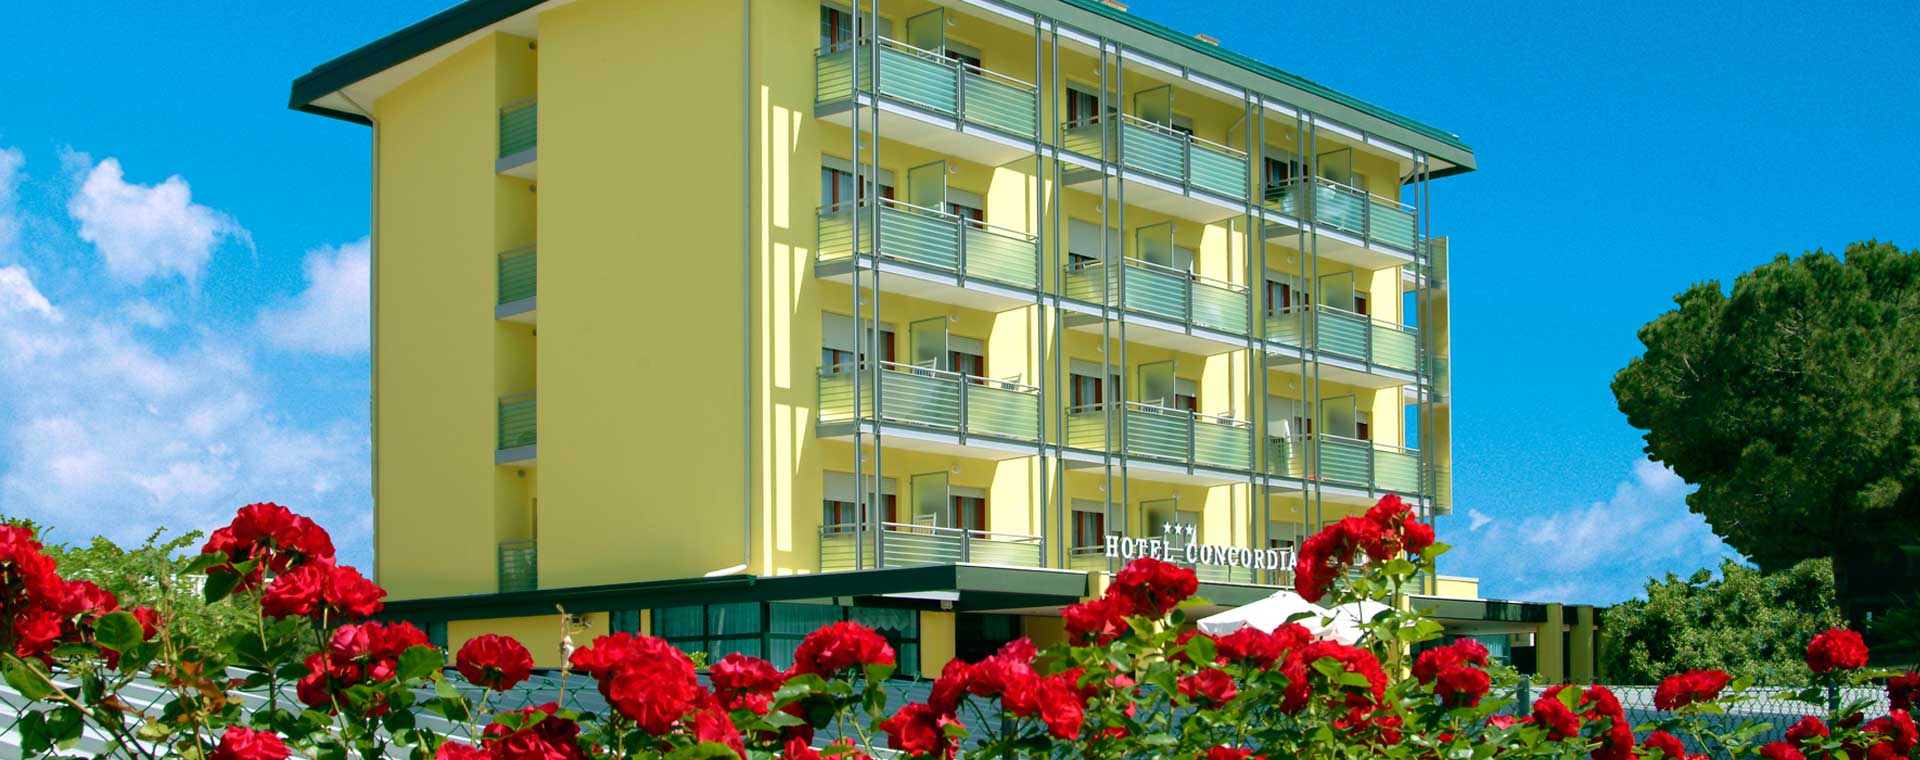 Hotel Concordia vacanze Bibione in famiglia